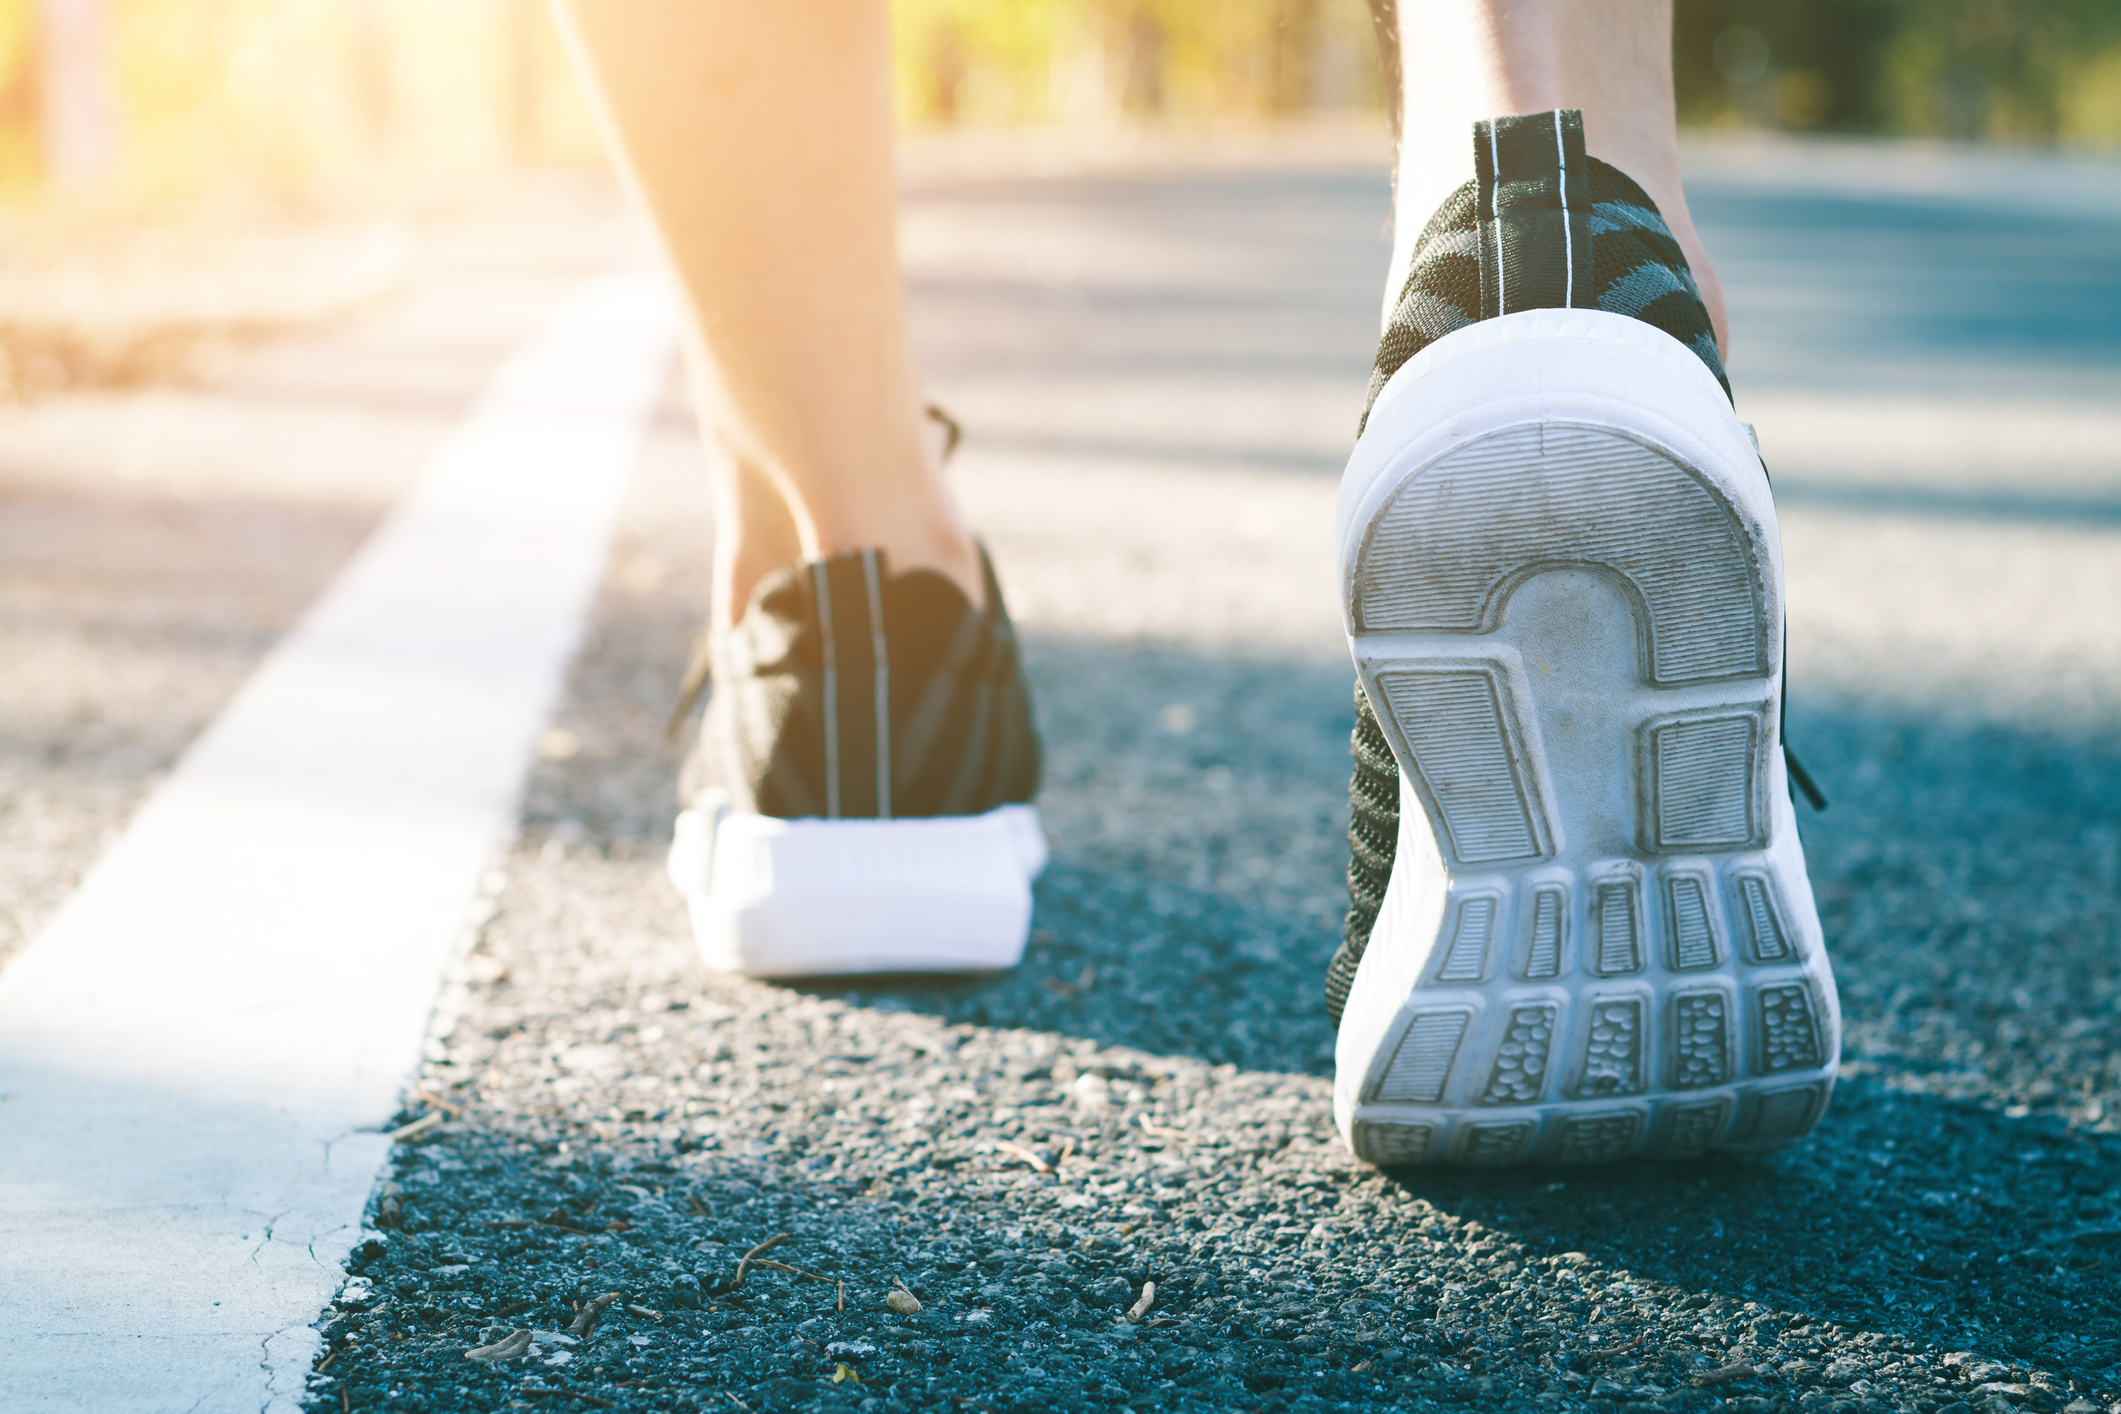 NEC、「歩行センシング・ウェルネスソリューション」を10月より法人へ展開─日常歩行データの質を測り健康サポート